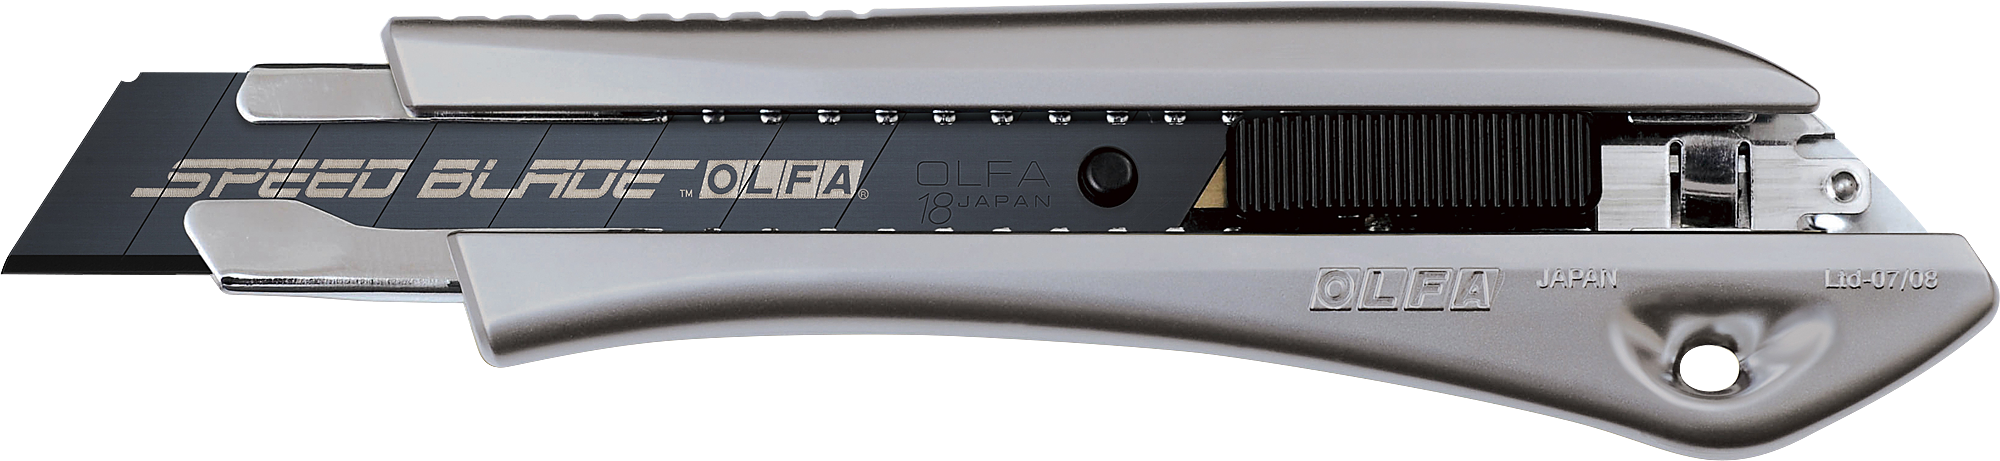 Limited al. Нож 18мм, автофиксатор Olfa. Нож Olfa с сегментированным лезвием 18 мм ol-Ltd-l-LFB. Olfa лезвия 18мм. Olfa ol-Ltd-al-LFB.